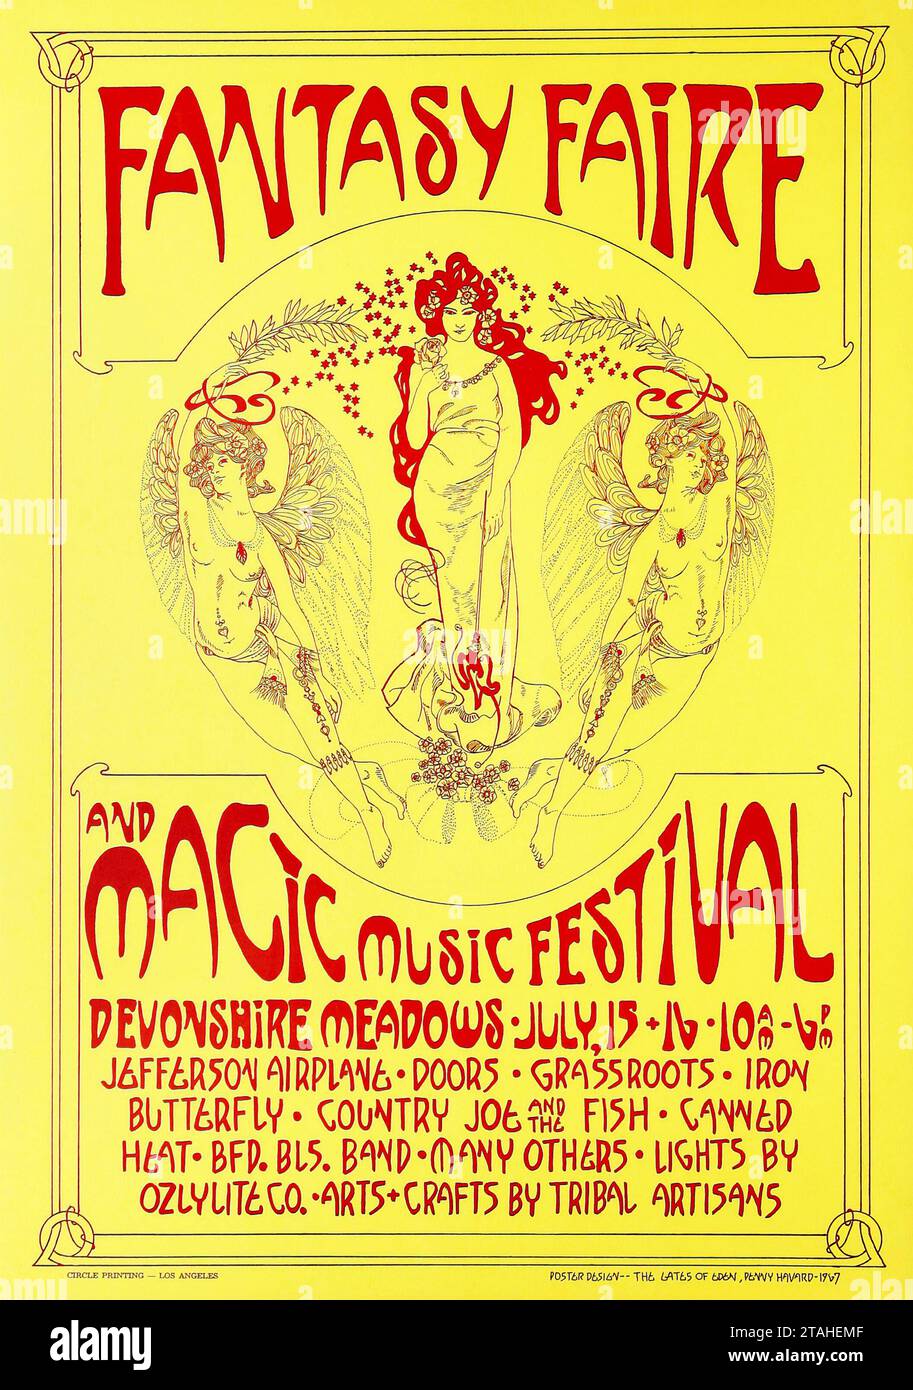 Fantasy Faire e Magic Music Festival poster (1967). Devonshire Meadows a Northridge, California - Jefferson Airplane, Doors, Grassroots, Country Joe and the Fish, Canned Heat e molti altri. Foto Stock